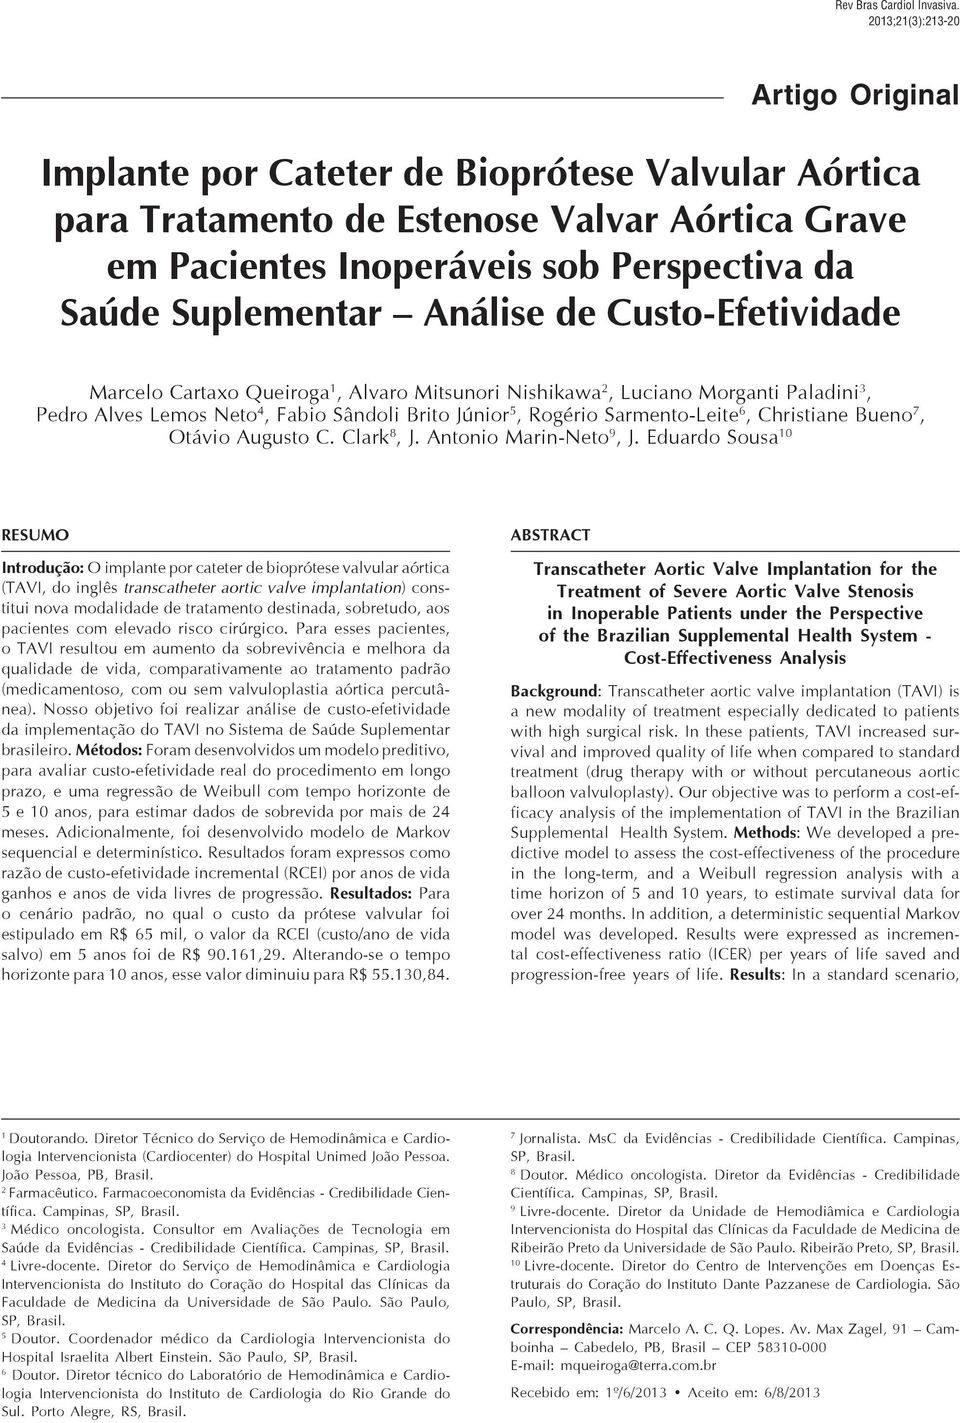 213 Análise de Custo-Efetividade do TAVI Artigo Original Implante por Cateter de Bioprótese Valvular Aórtica para Tratamento de Estenose Valvar Aórtica Grave em Pacientes Inoperáveis sob Perspectiva